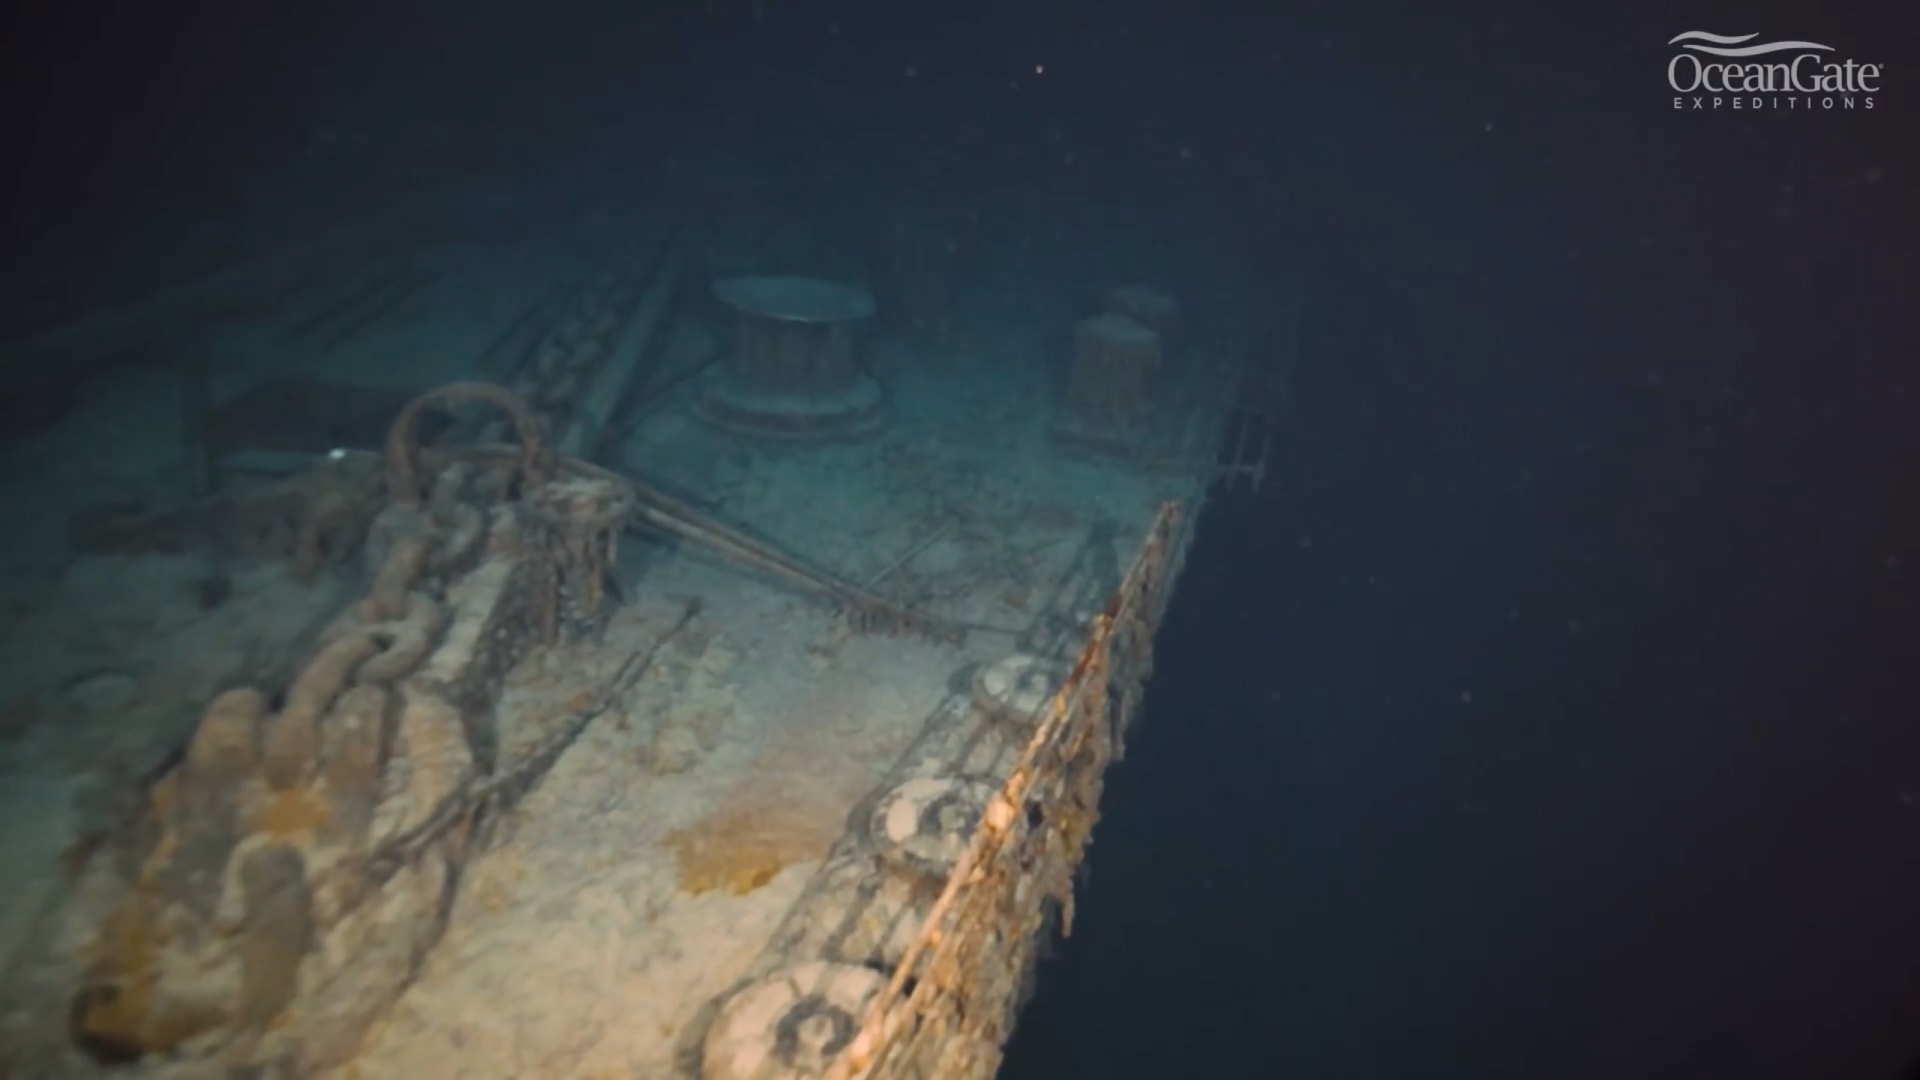 صور جديدة تكشف تحلل سفينة "تيتانيك" في أعماق البحار